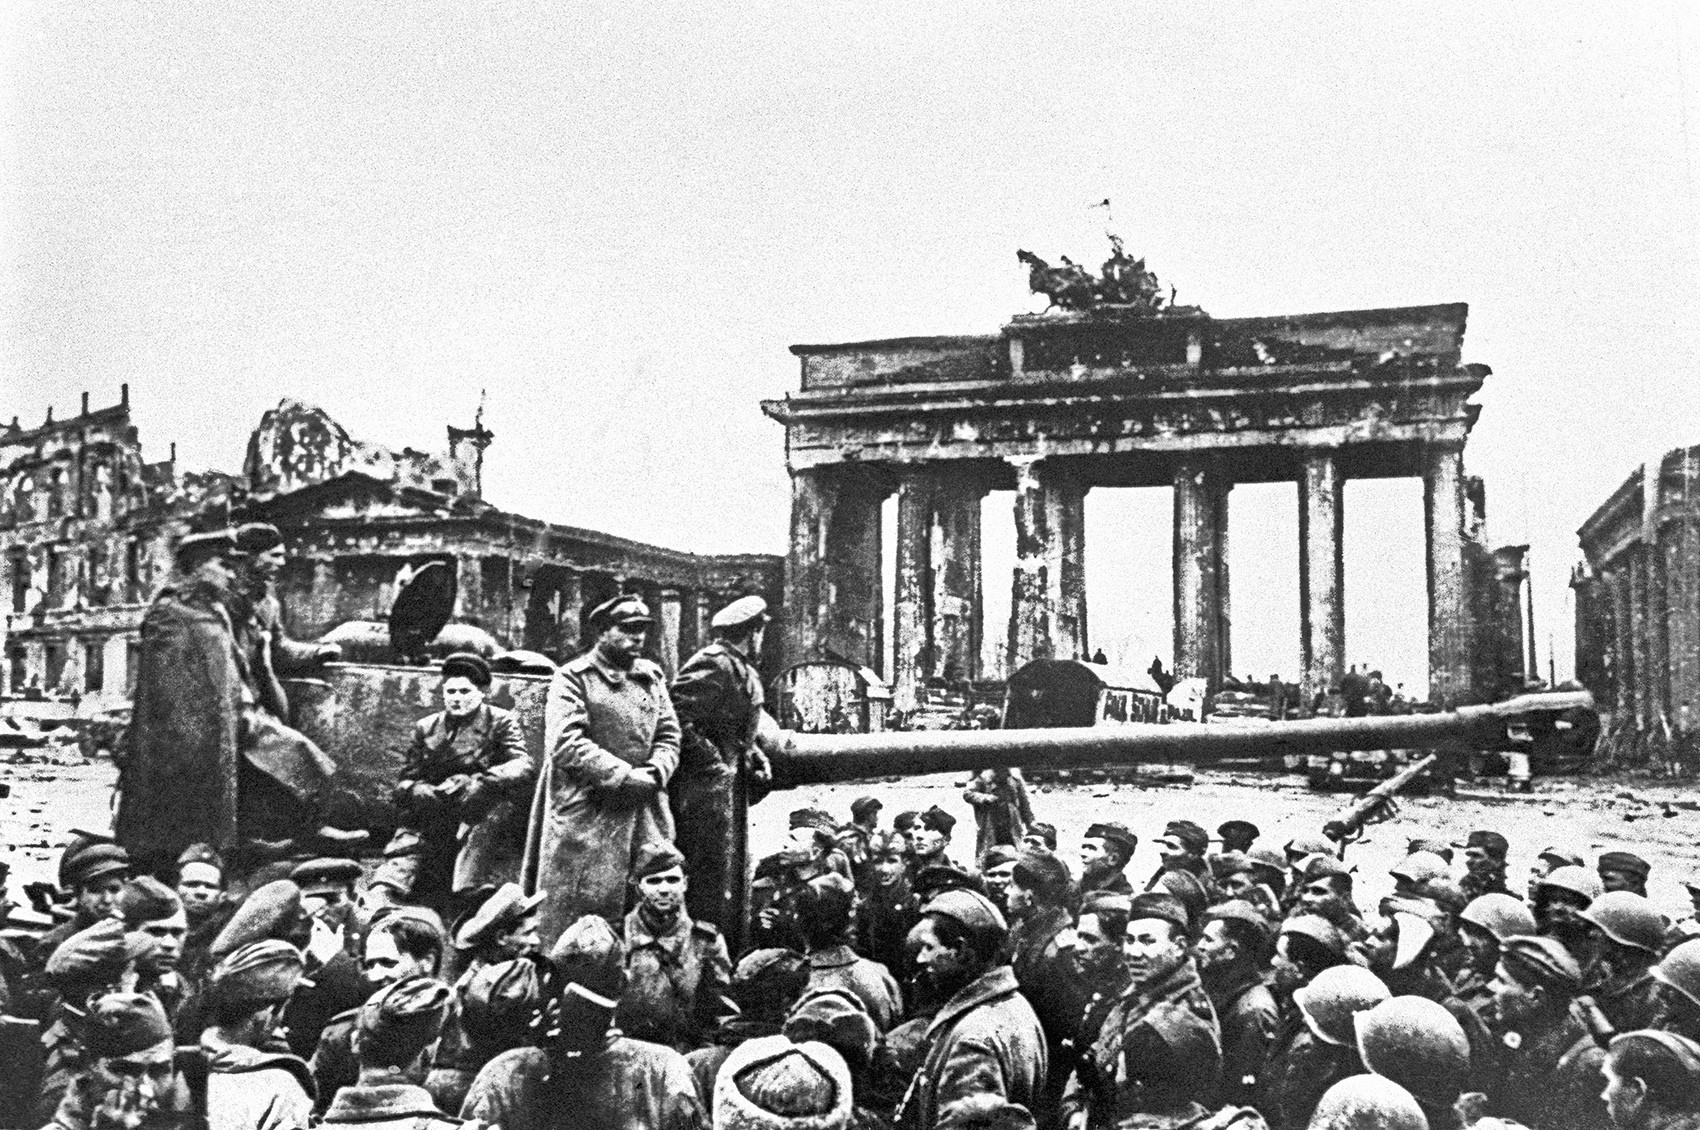 Le truppe sovietiche a Berlino, maggio 1945